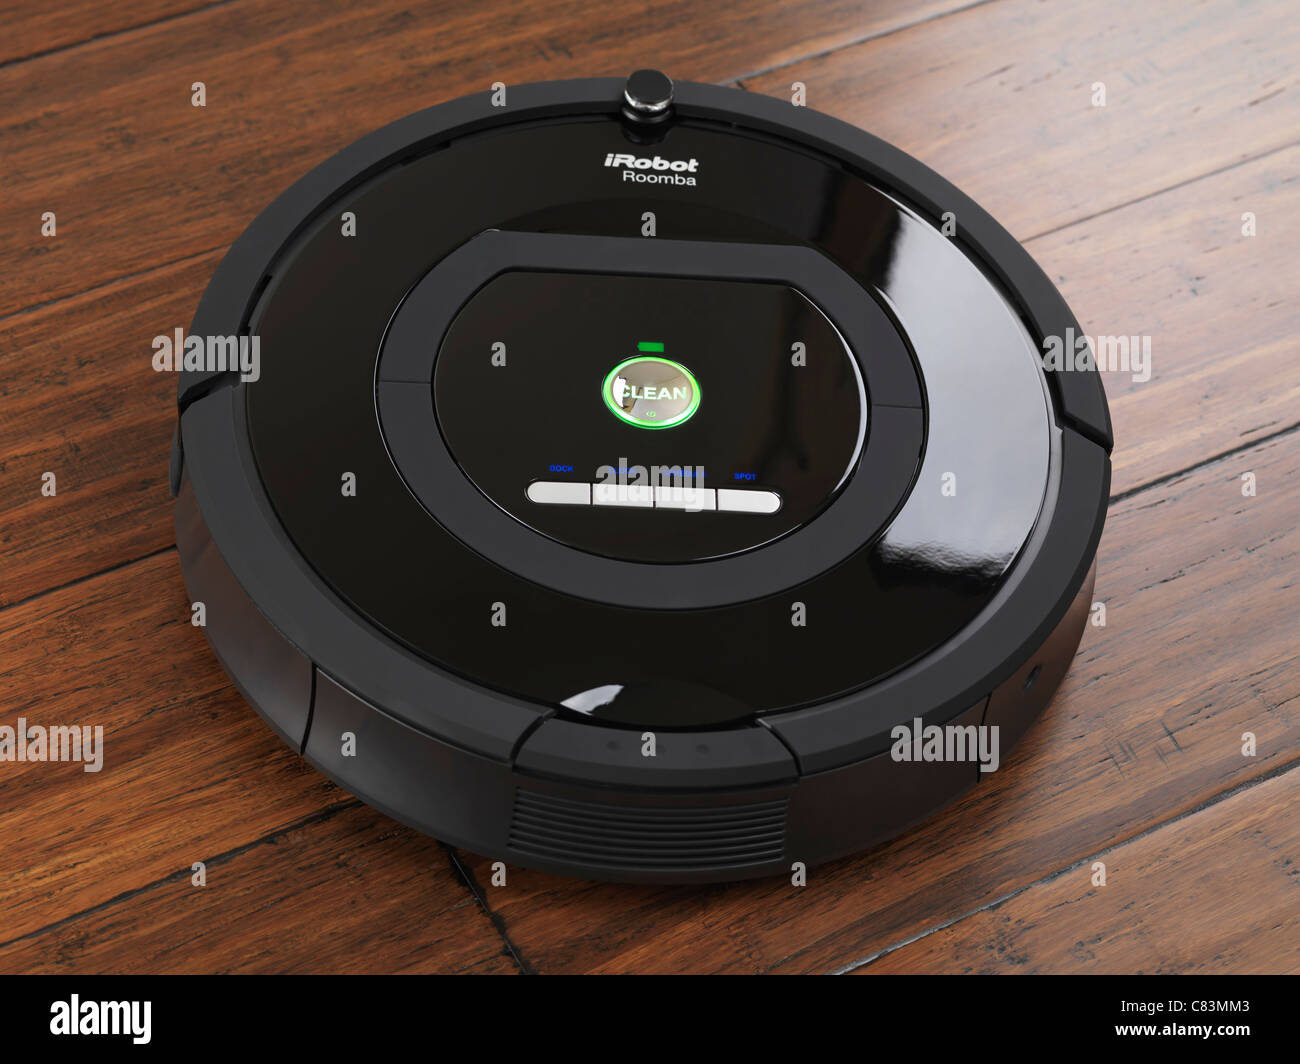 IRobot Roomba 770 aspirateur robot de nettoyage ménagers sur plancher de bois franc Banque D'Images